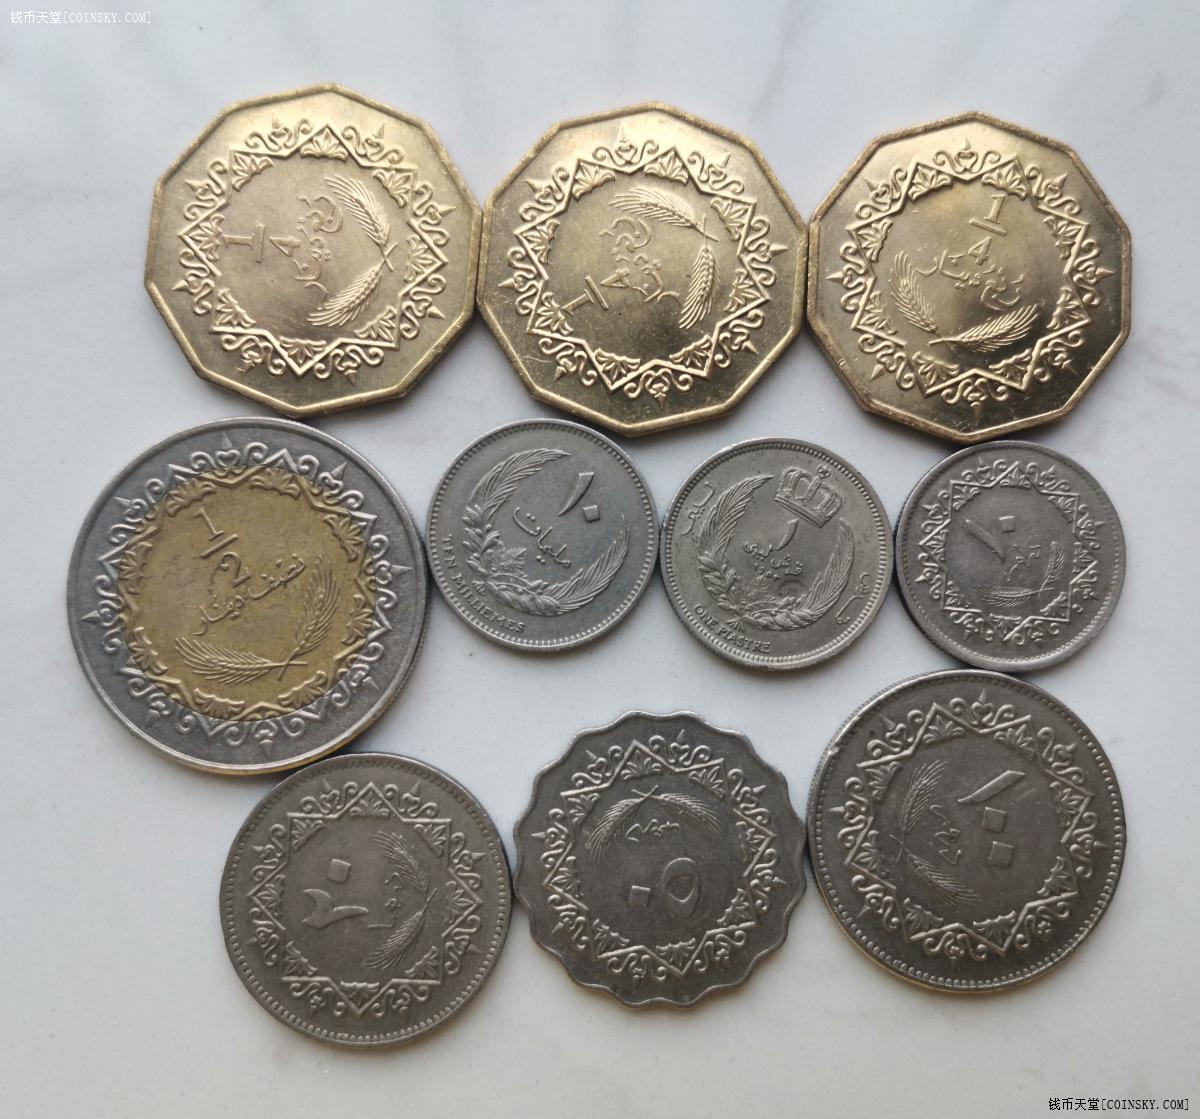 钱币天堂·交易区详情·利比亚 不成套流通版币 10枚 品不错,个别全新